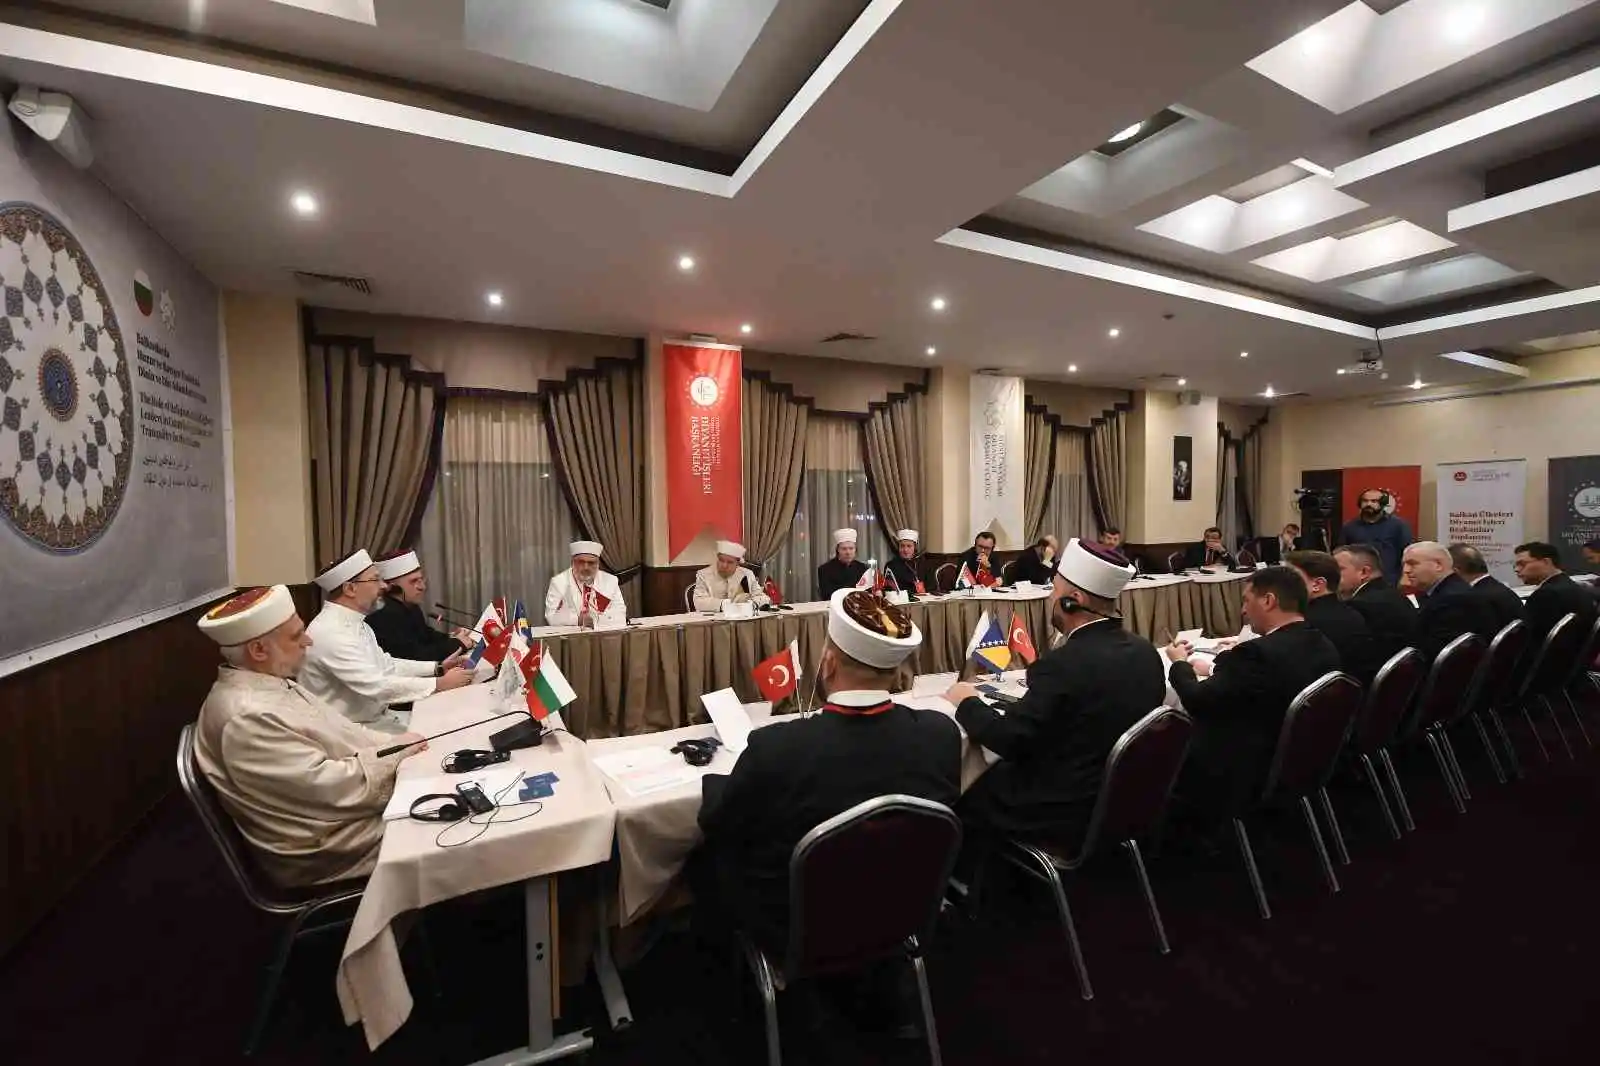 9. Balkan Ülkeleri Diyanet İşleri Başkanları Toplantısı sona erdi
